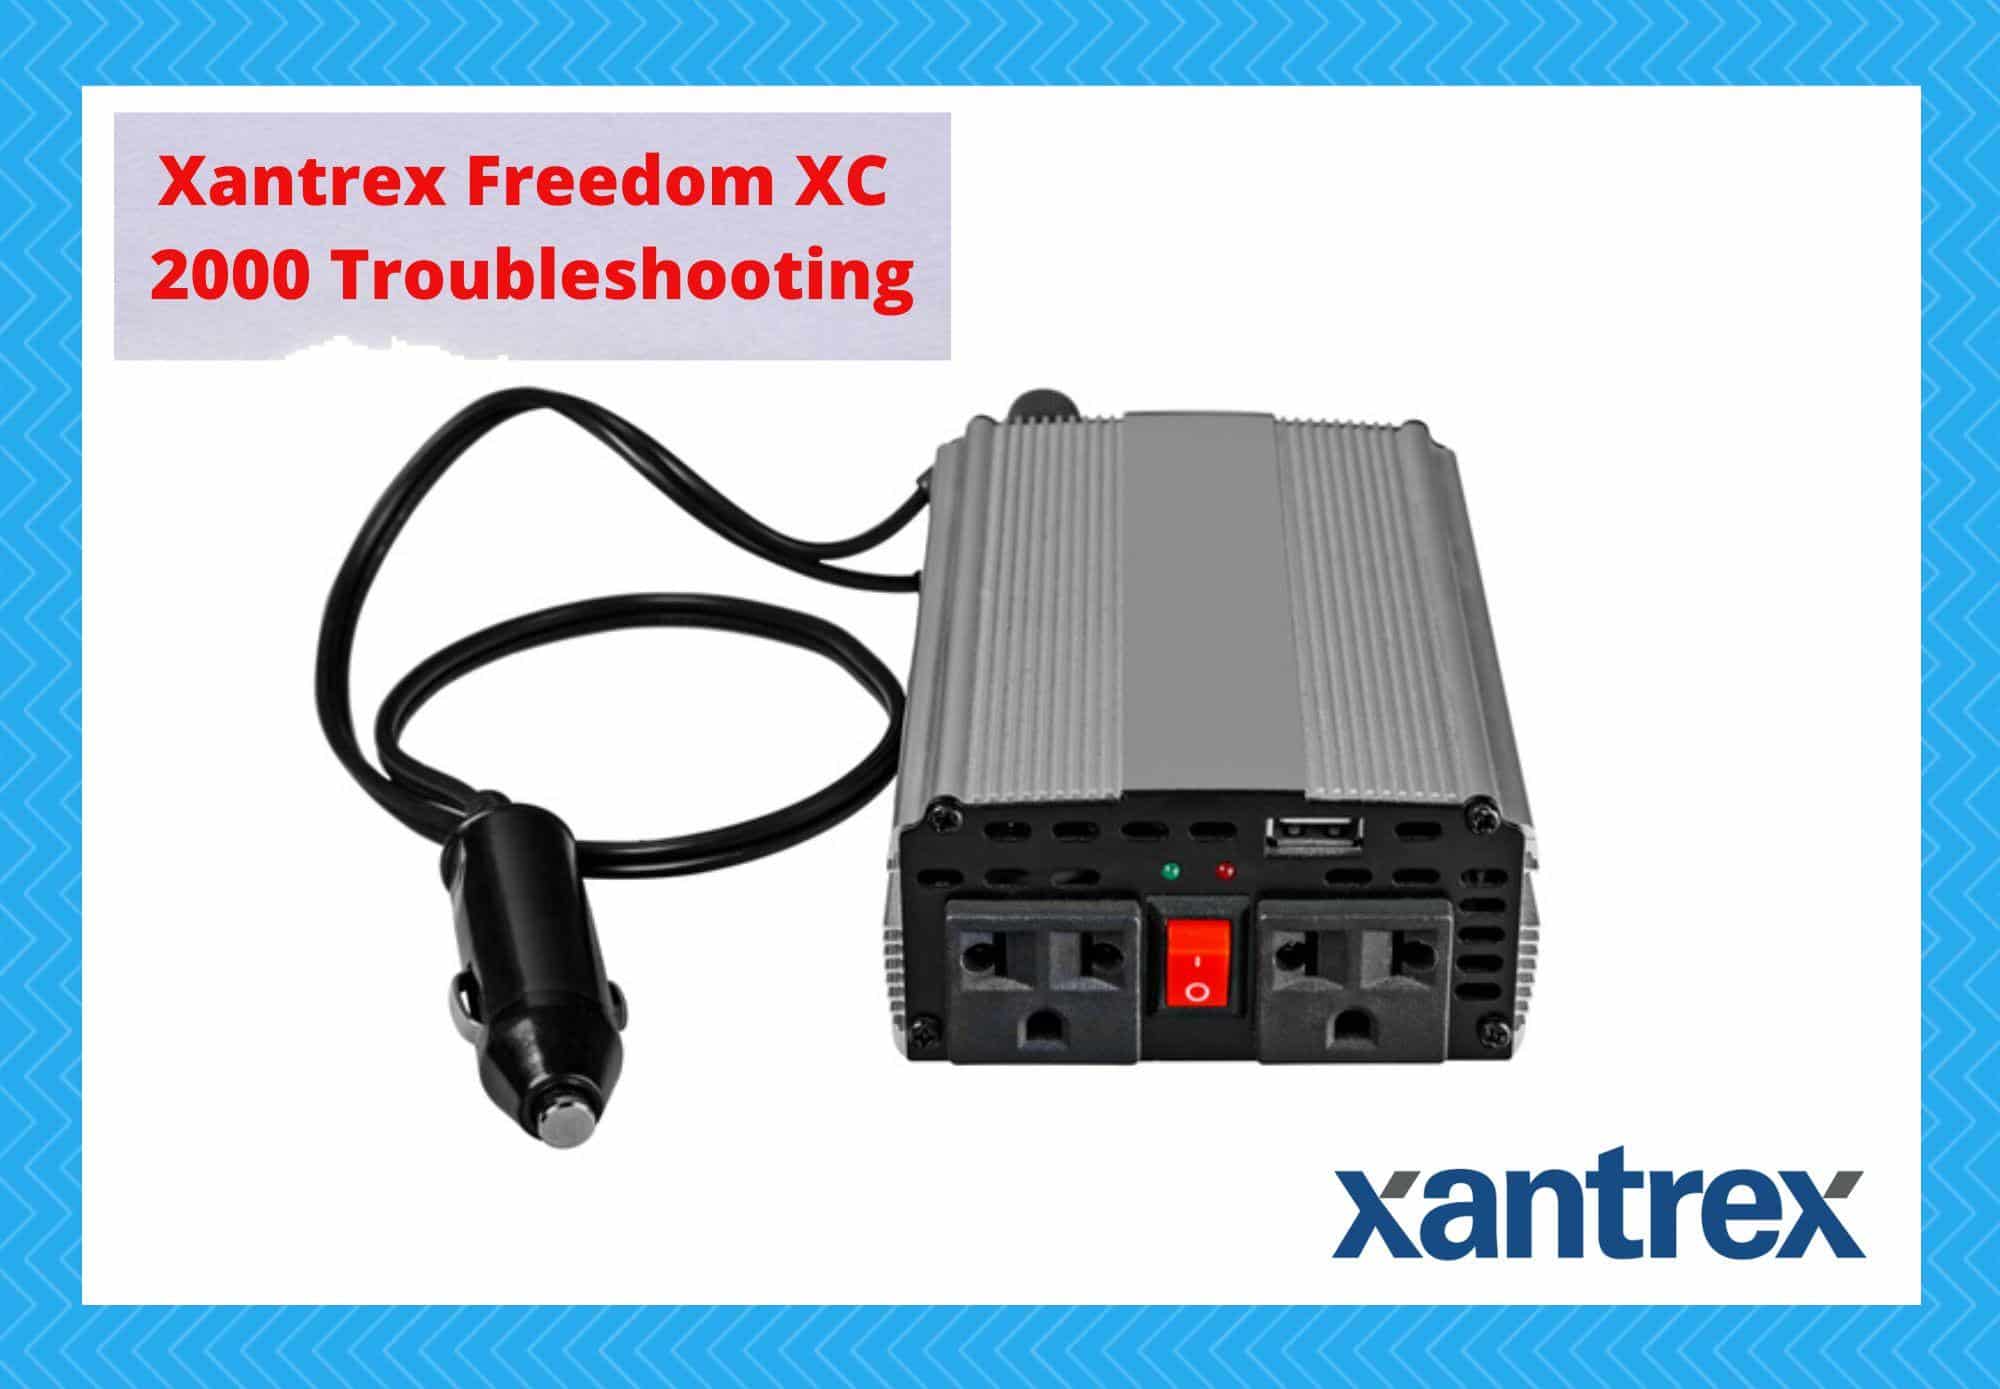 xantrex freedom xc 2000 troubleshooting